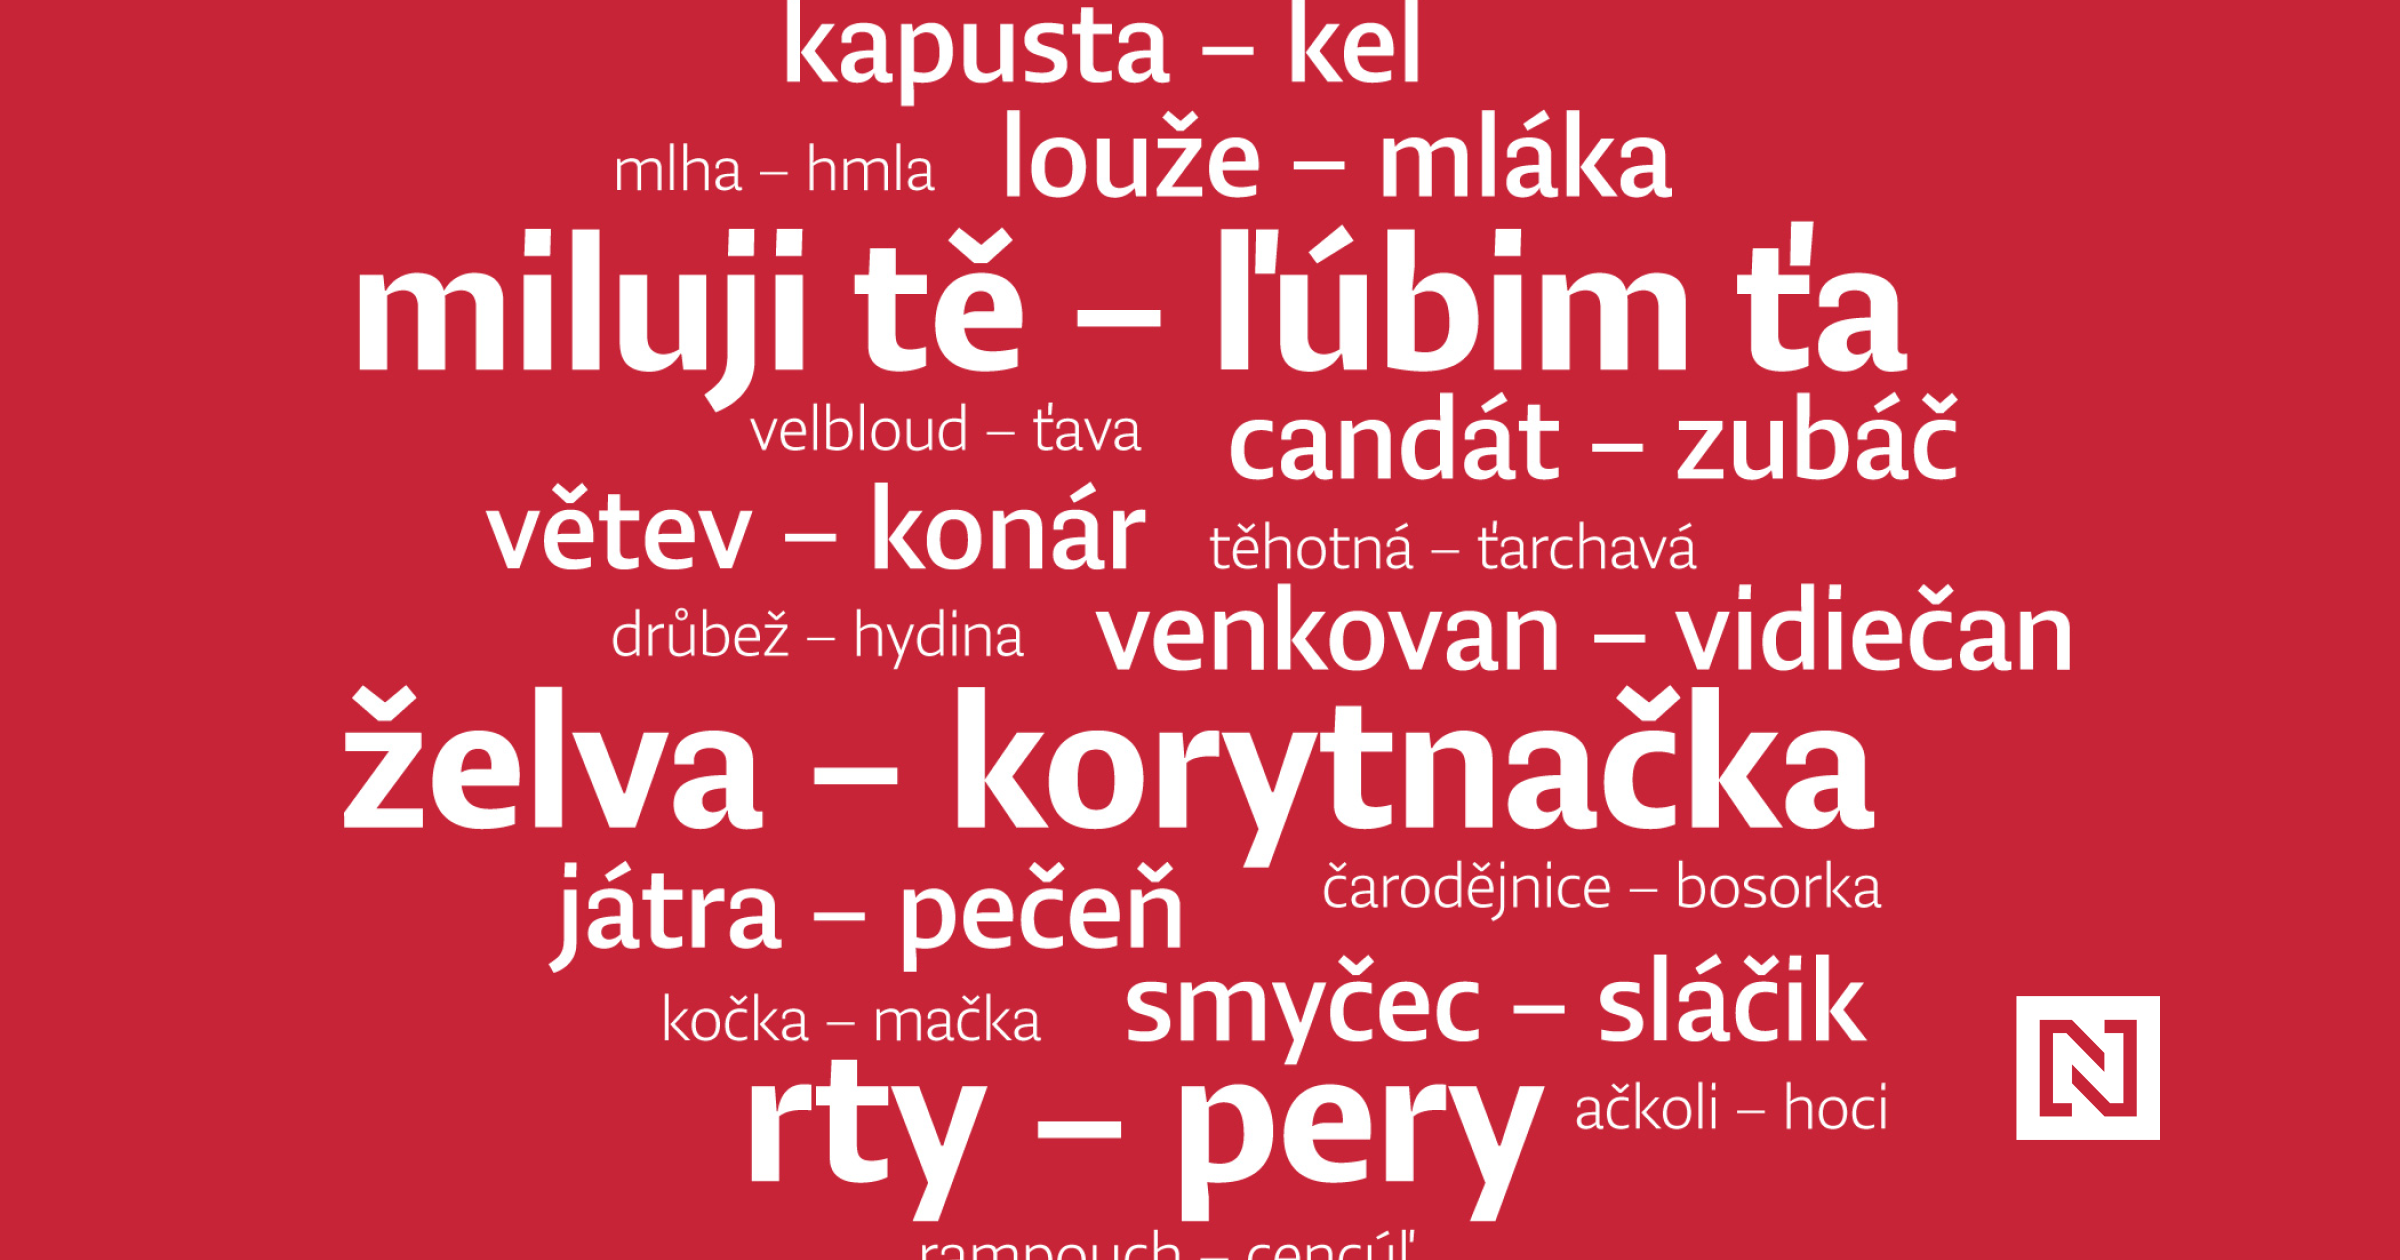 Česko-slovenské slovo týdne: těhotná vs. ťarchavá